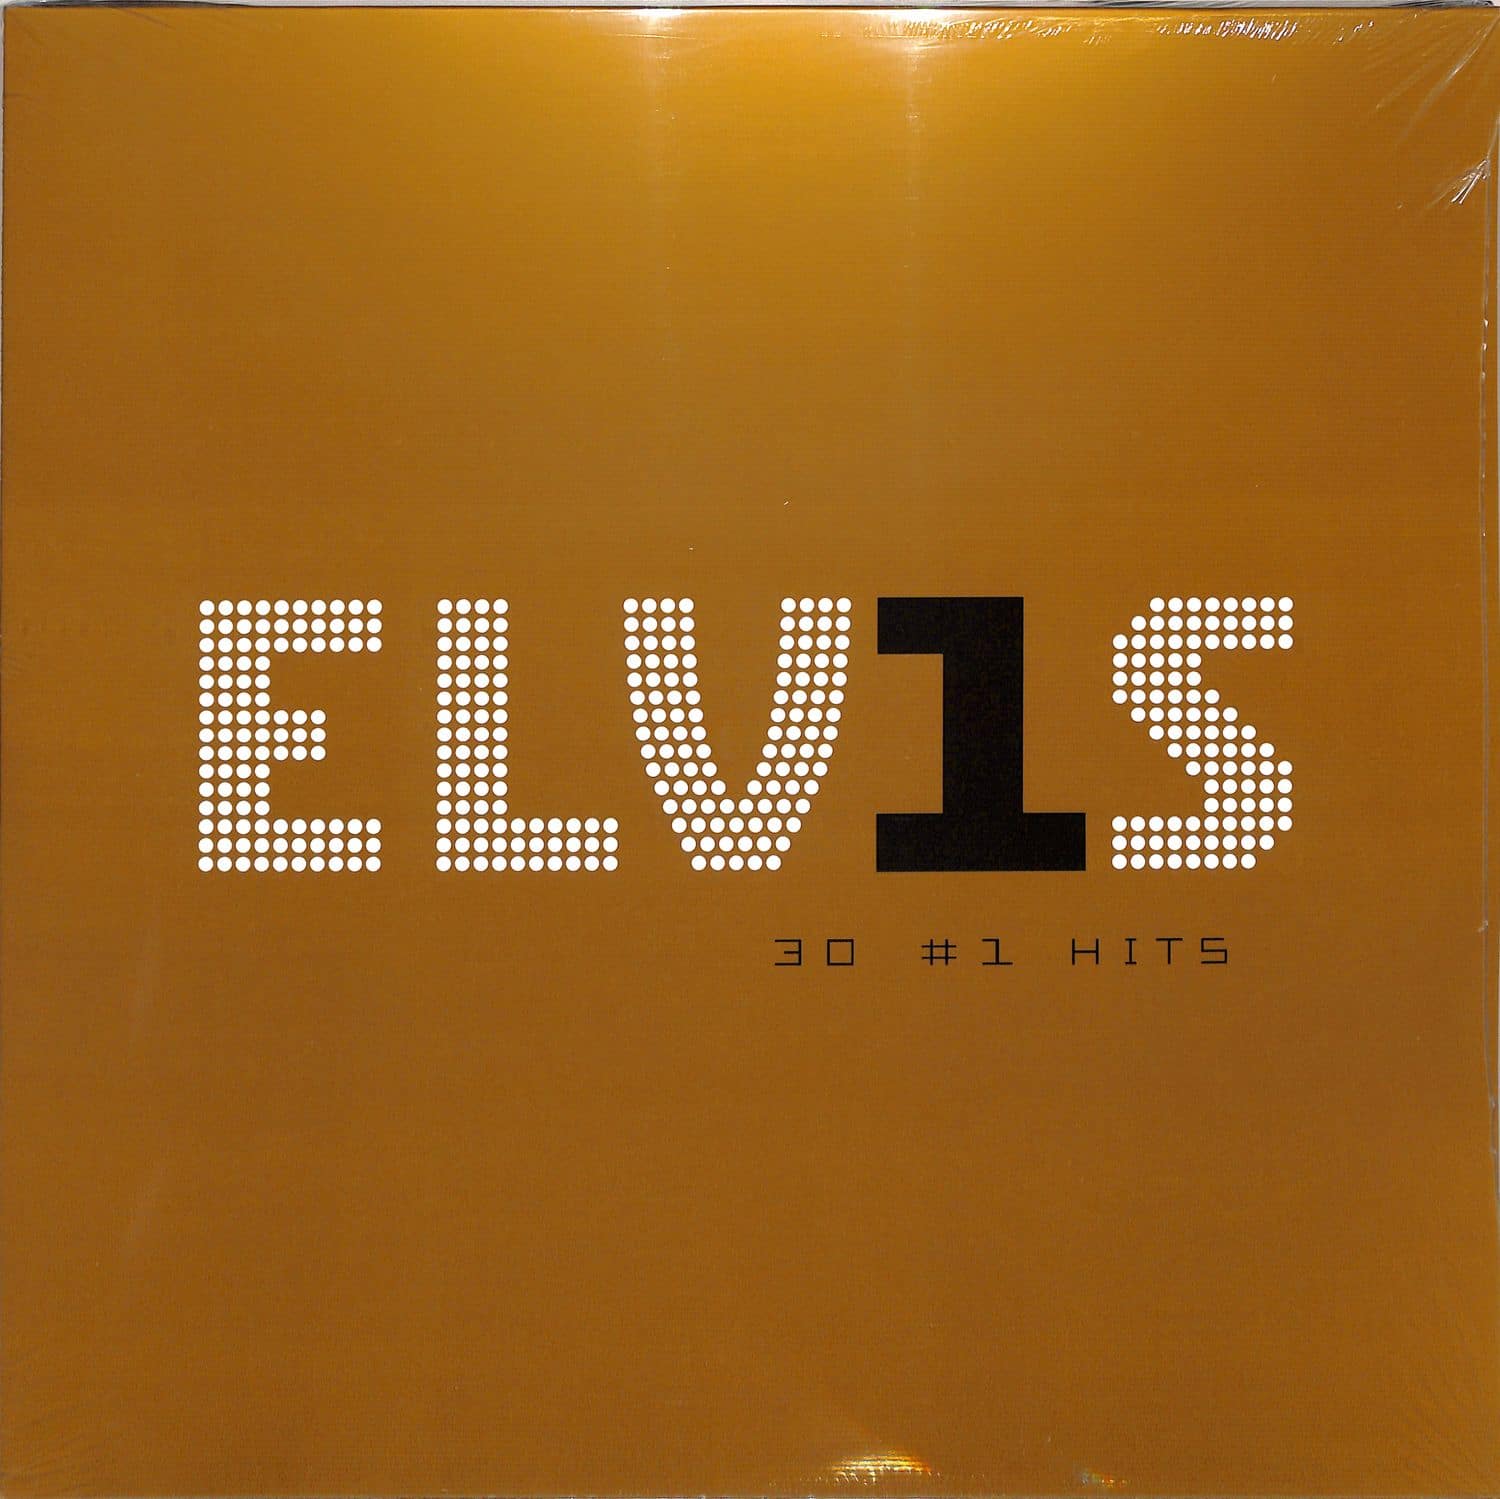 Elvis Presley - 30 NR. 1 HITS 